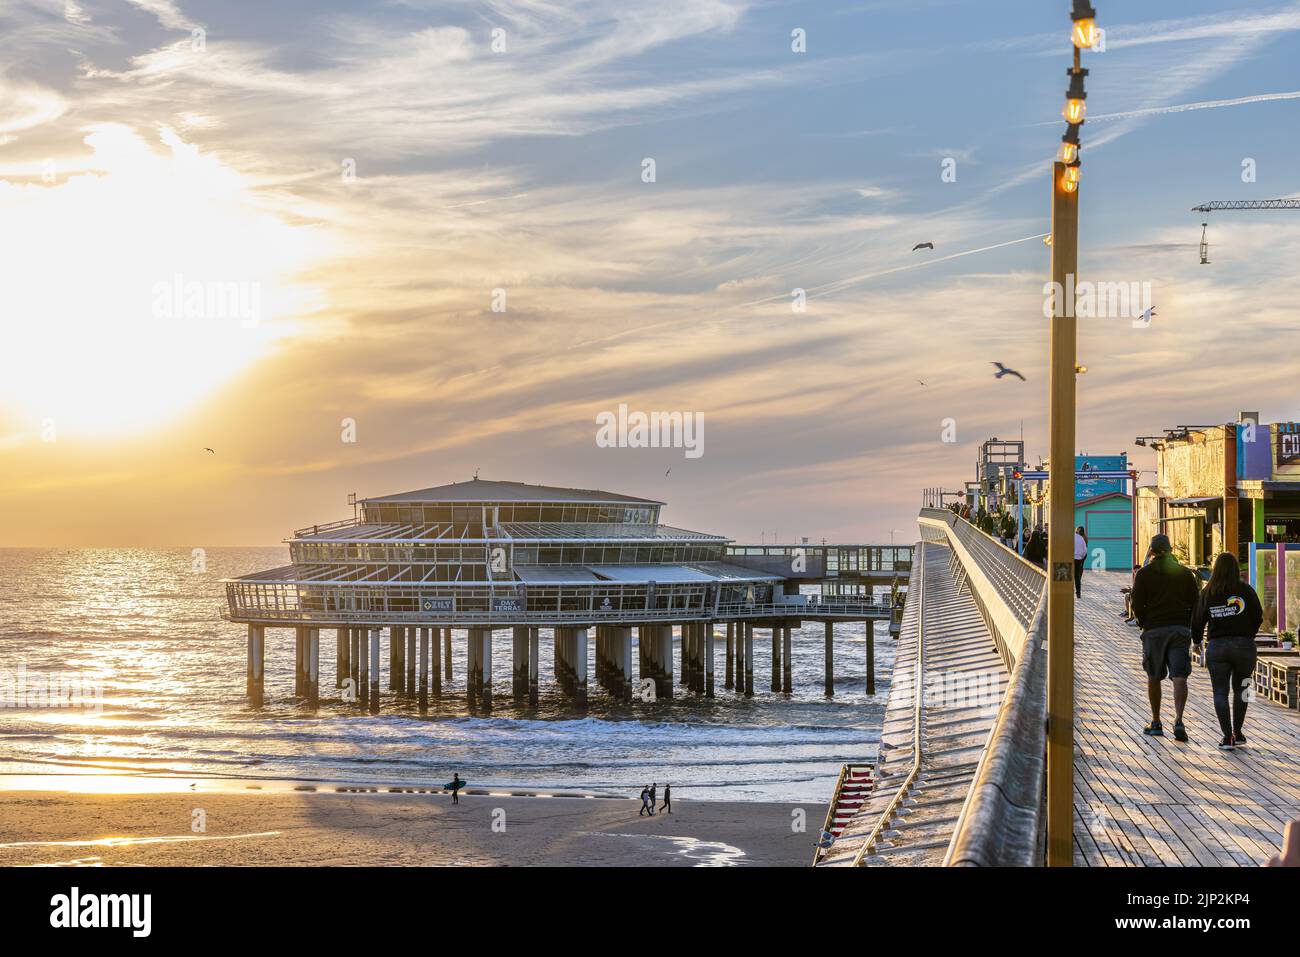 Eine wunderschöne Aussicht auf die Menschen, die während des Sonnenuntergangs auf dem Scheveningen de Pier spazieren gehen Stockfoto